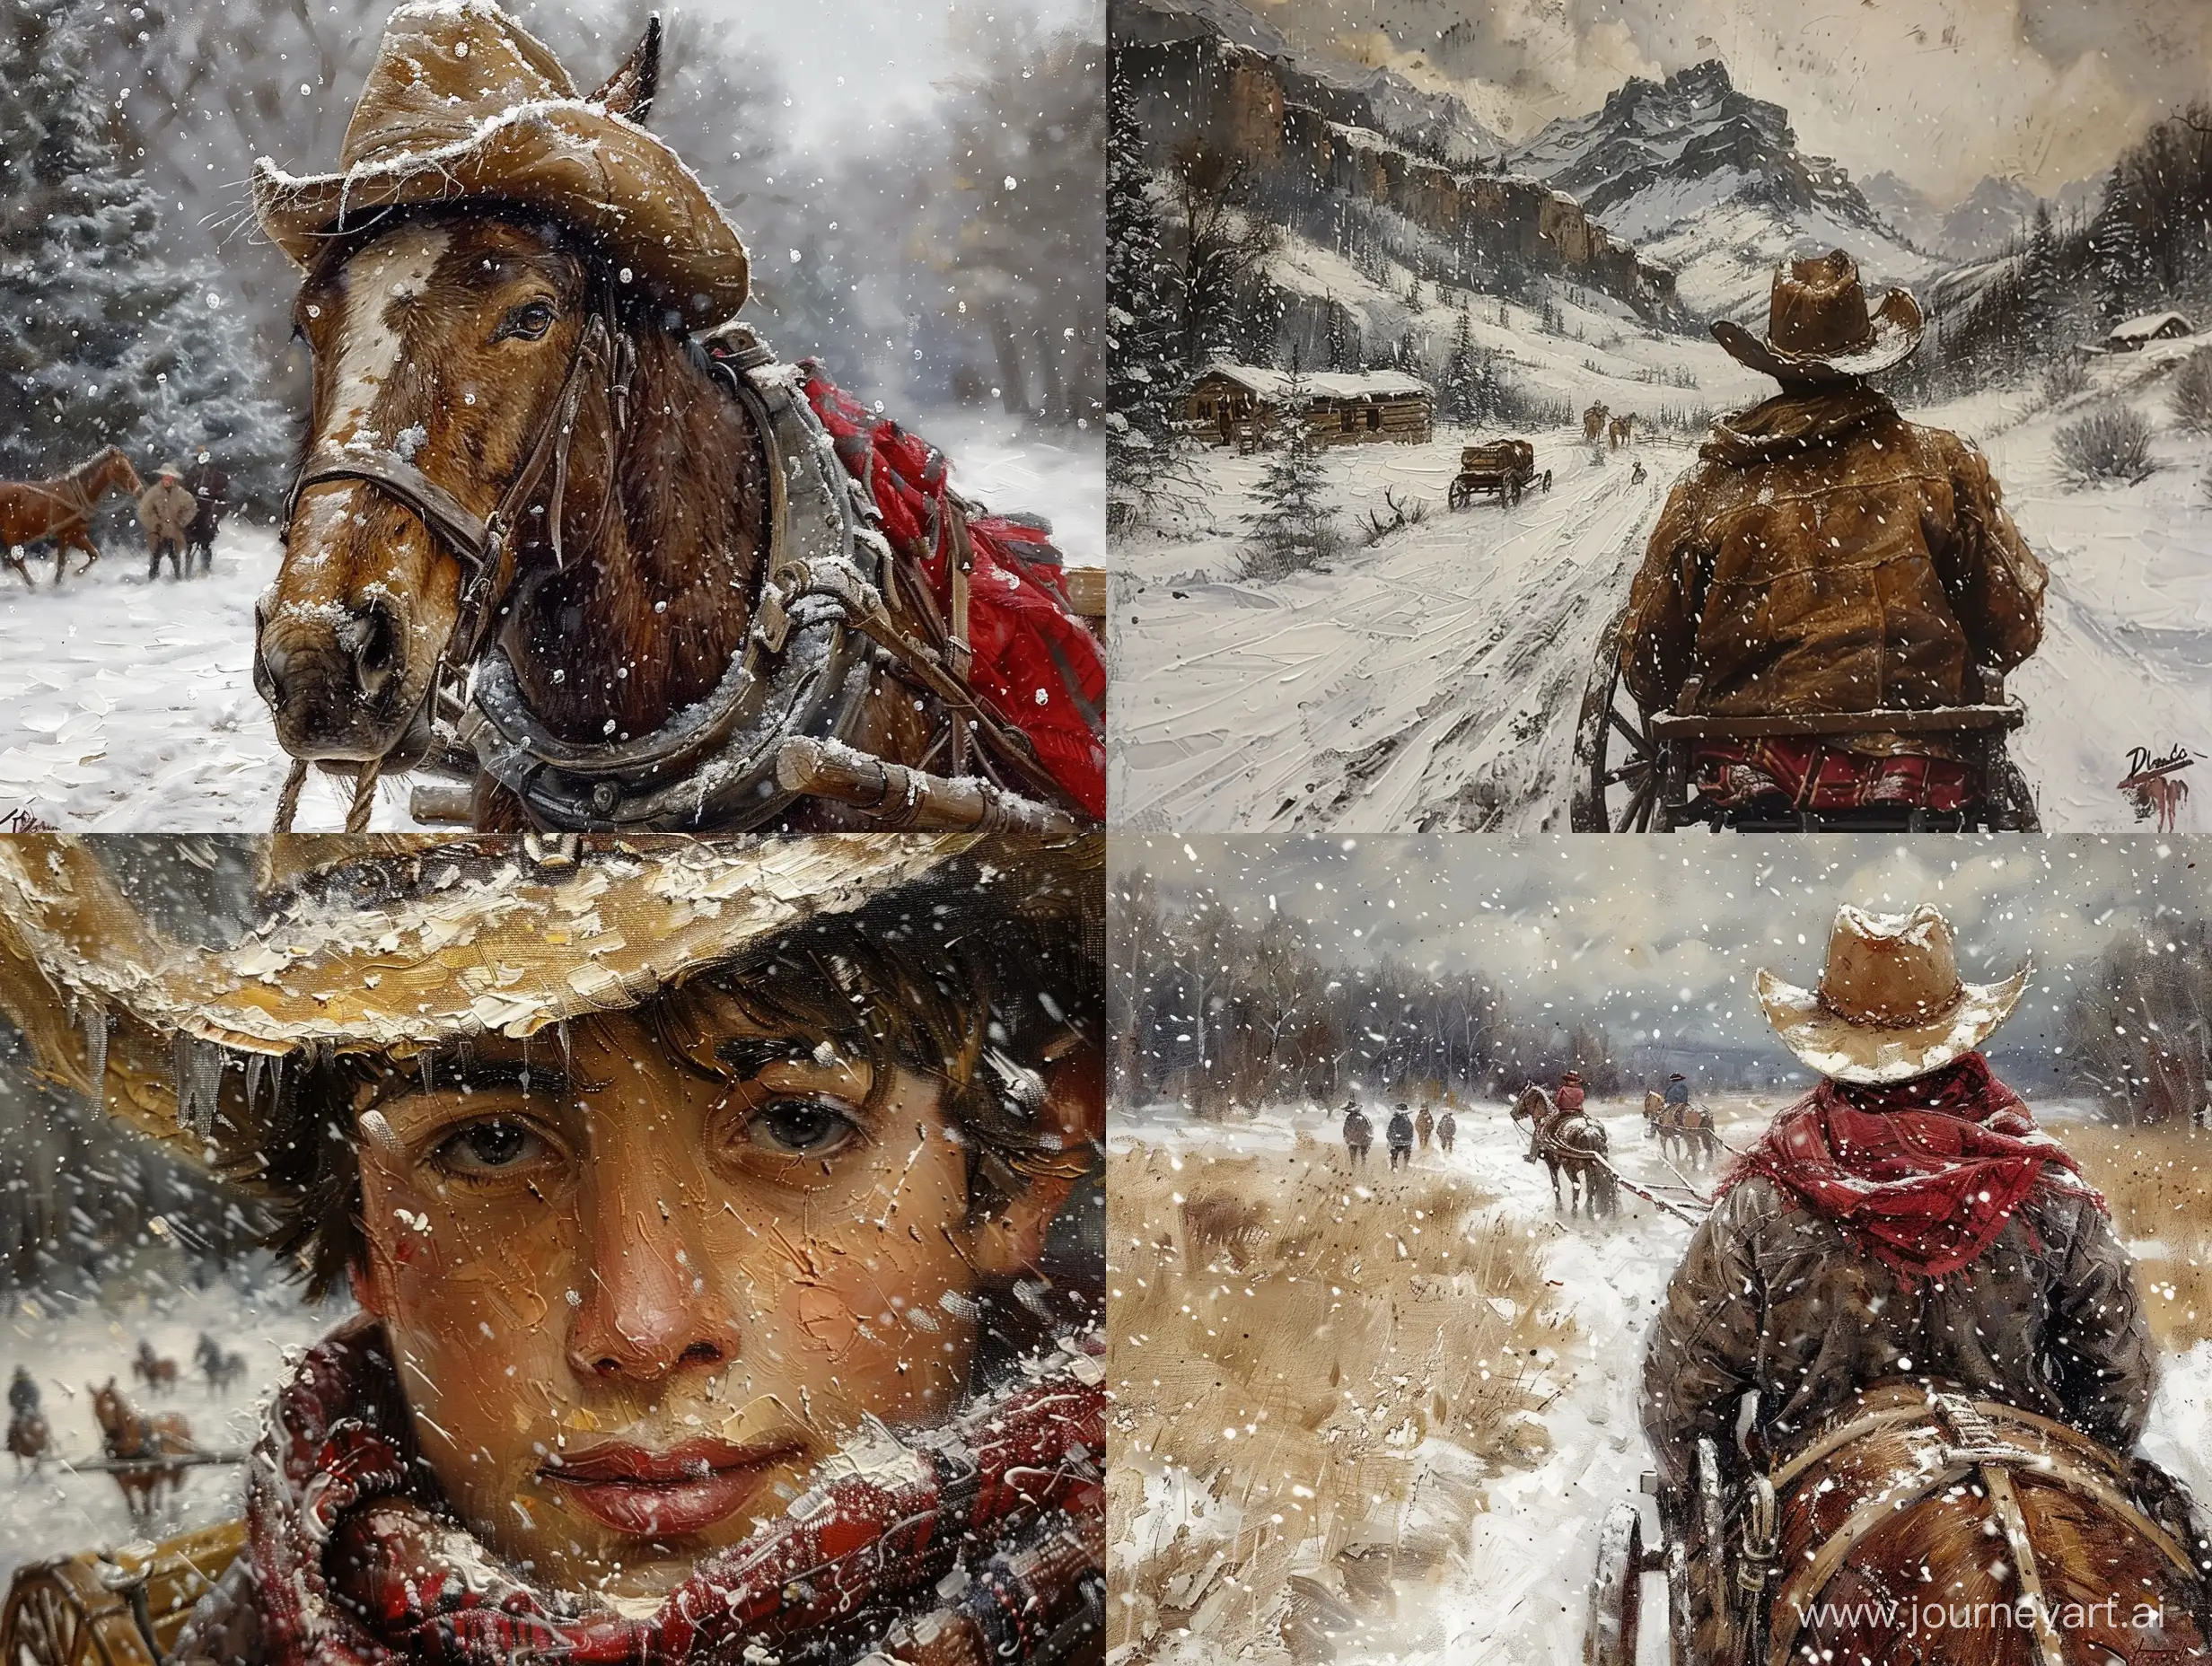 Realistic-Cowboy-on-Wagon-in-Snowy-Western-Landscape